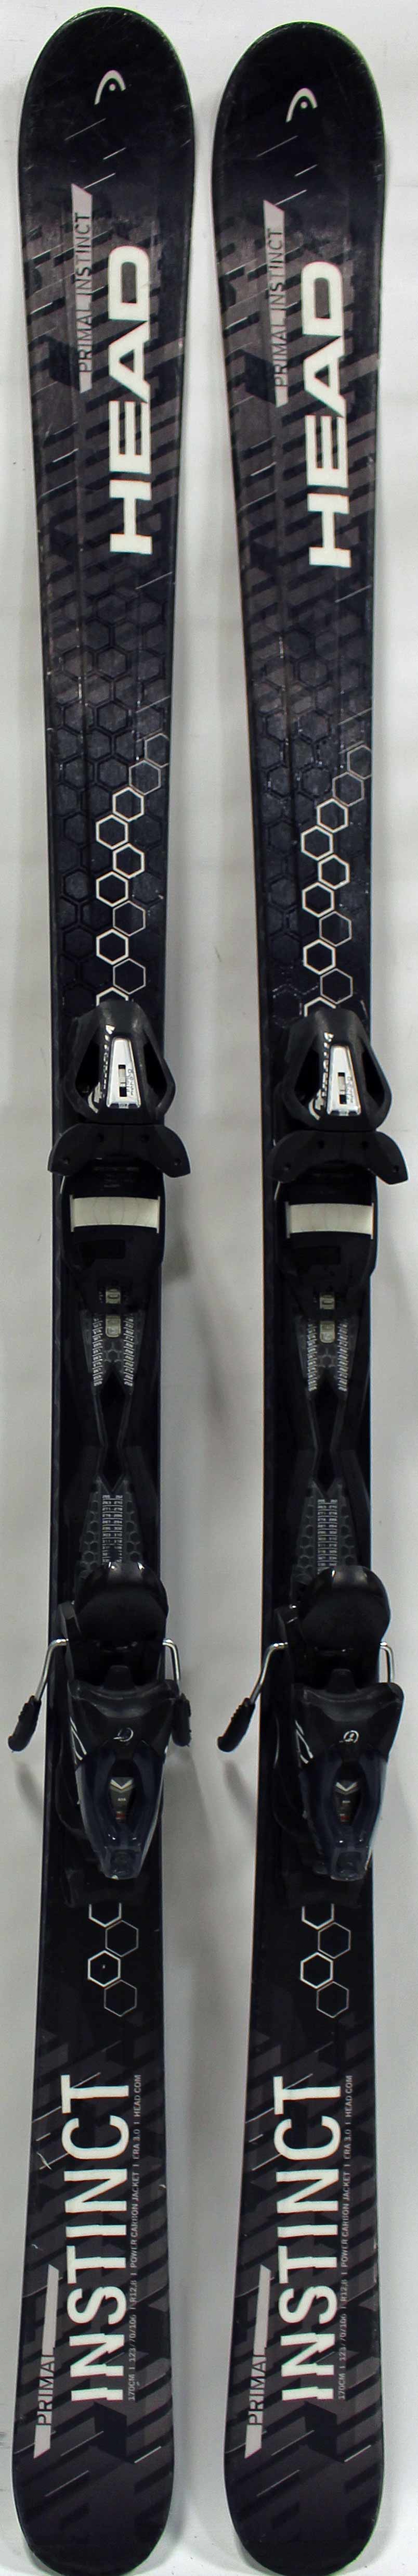 2016, Head, Primal Instinct Skis with Head PR 10 Bindings Used Demo Skis  170cm